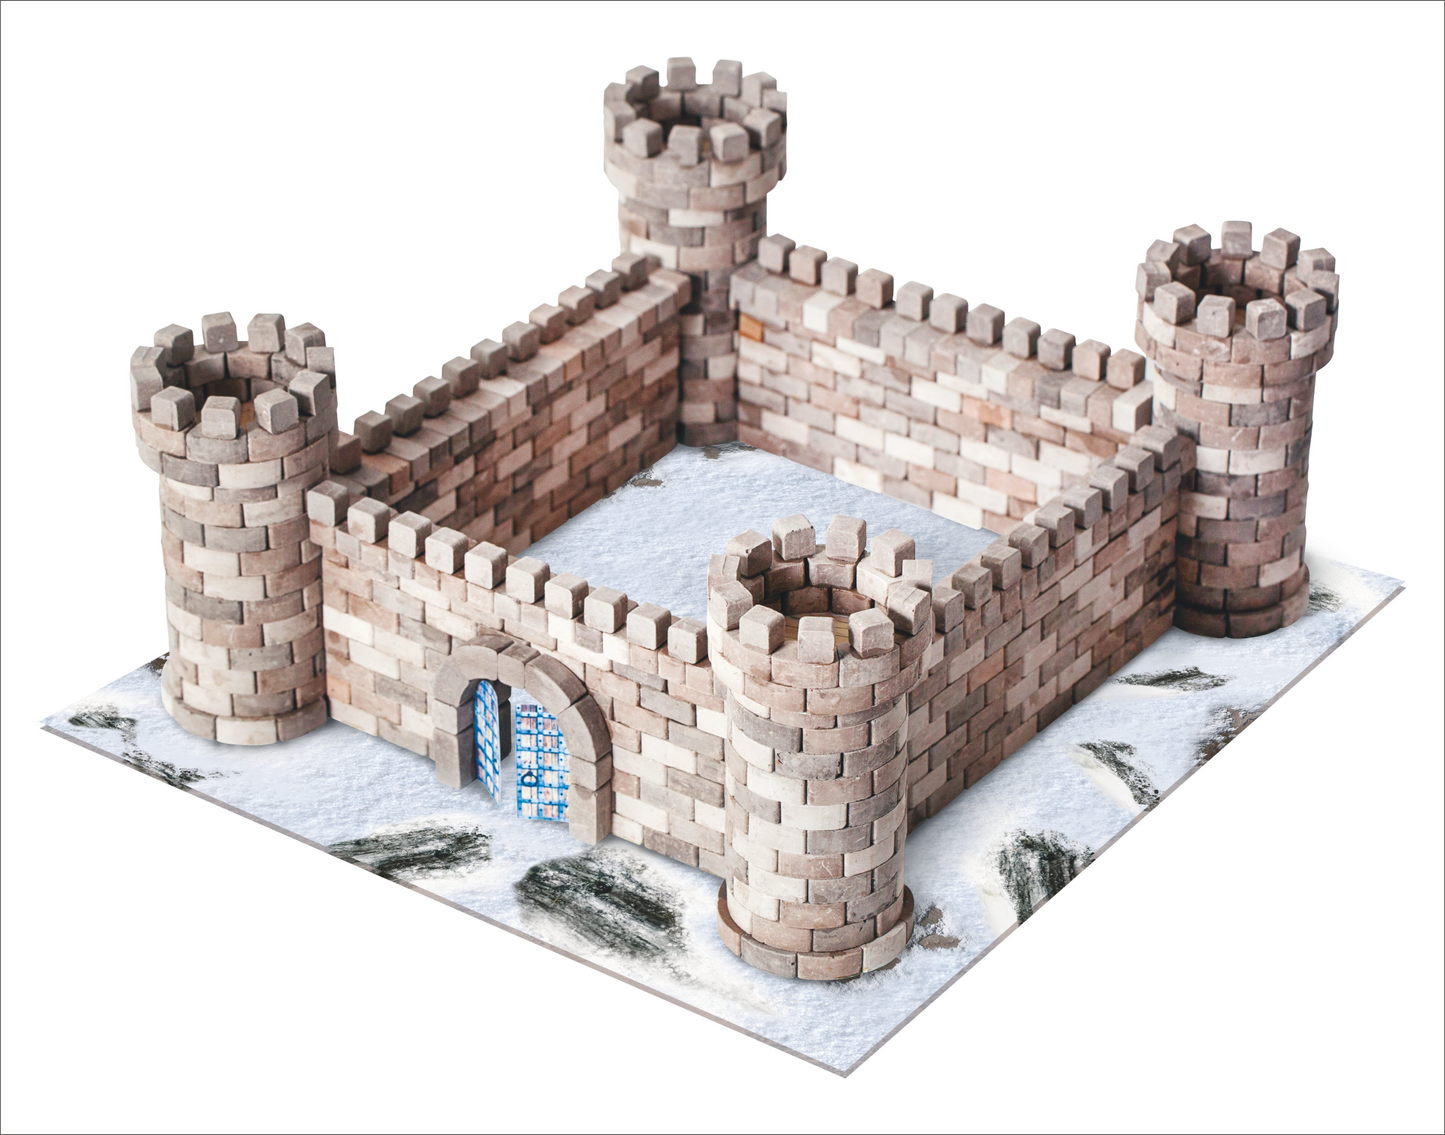 Mini Bricks Construction Set - Eagle's Nest Castle, Goodies N Stuff